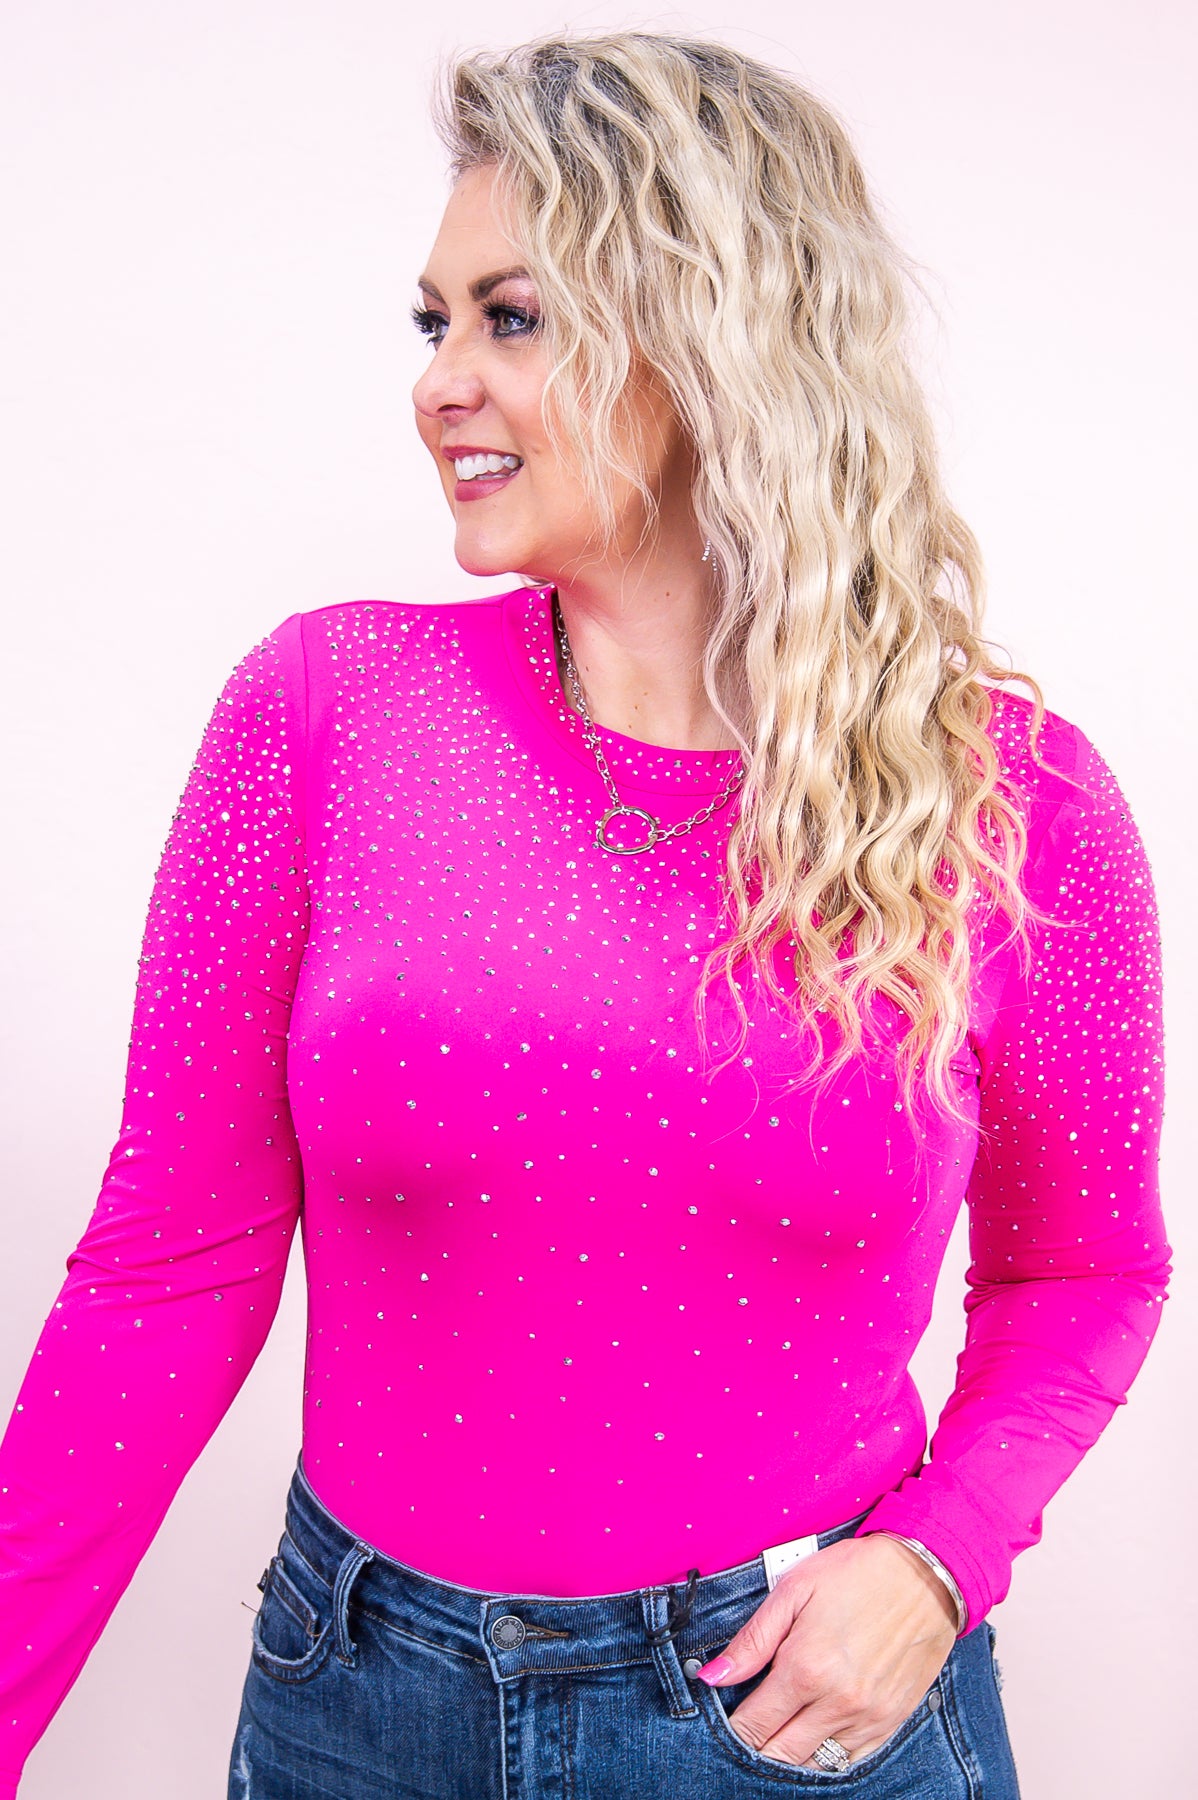 Bling Bling Baby Hot Pink/Silver Studded Bling Bodysuit - BDS1046HPK